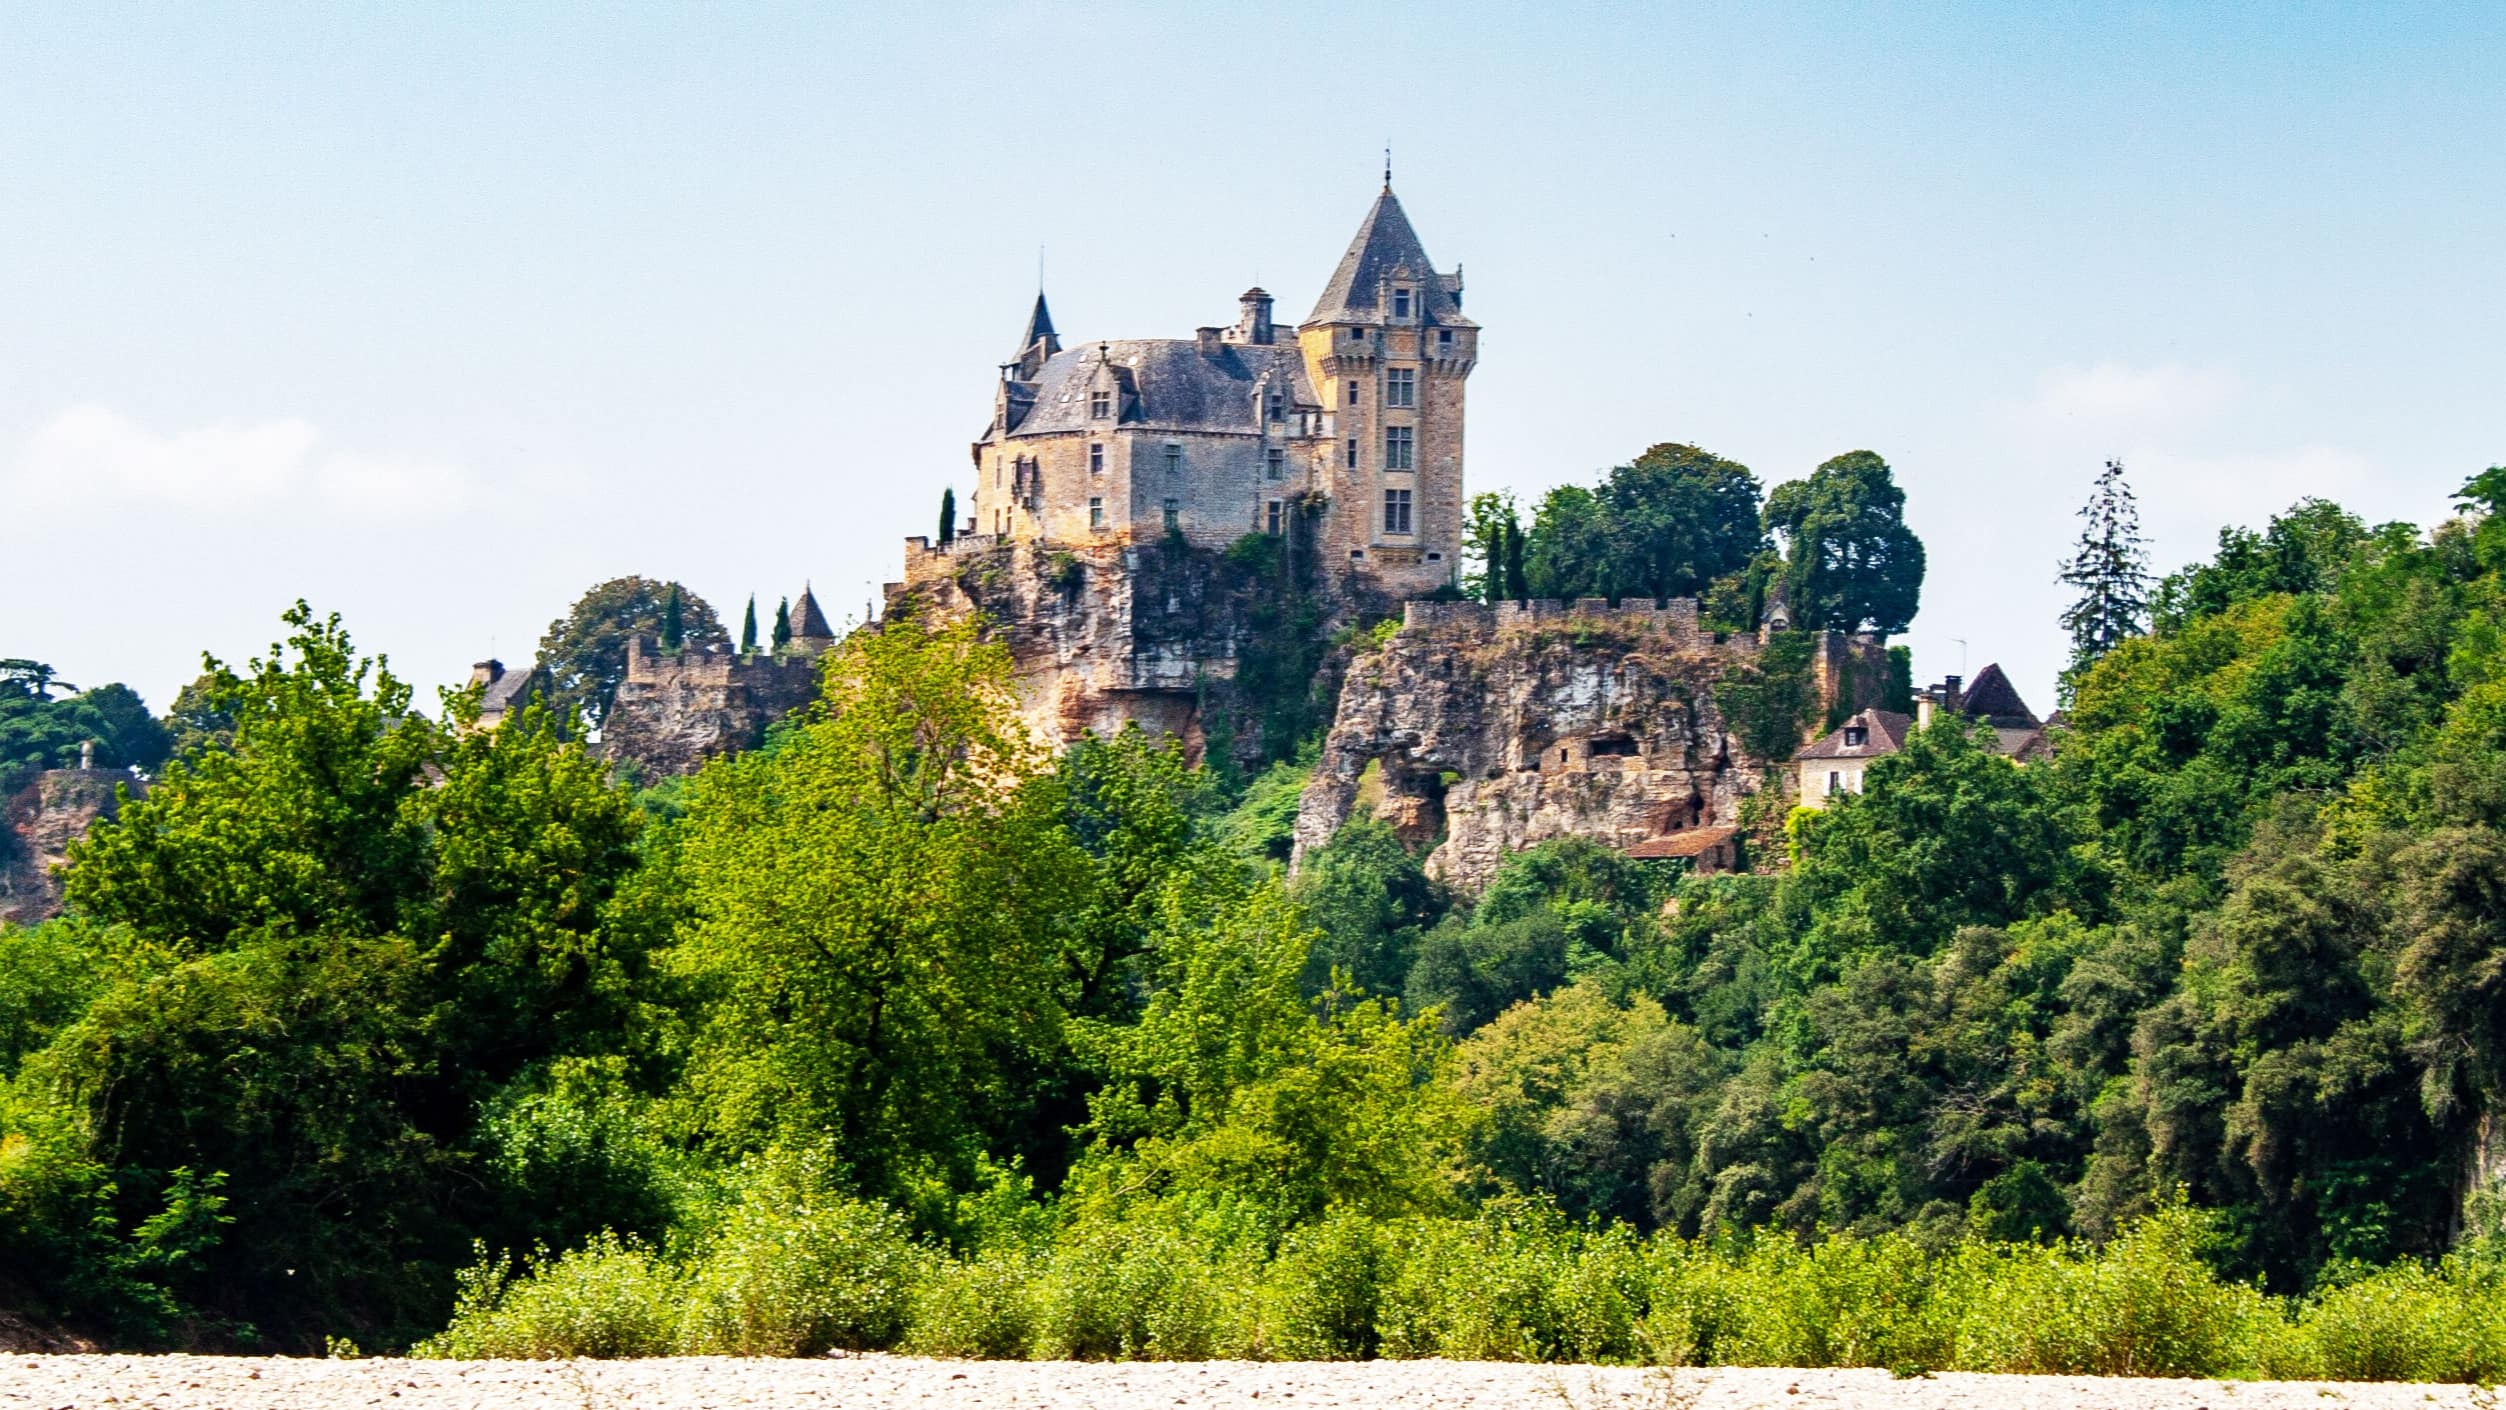 Location de vacances en Dordogne au milieu des châteaux